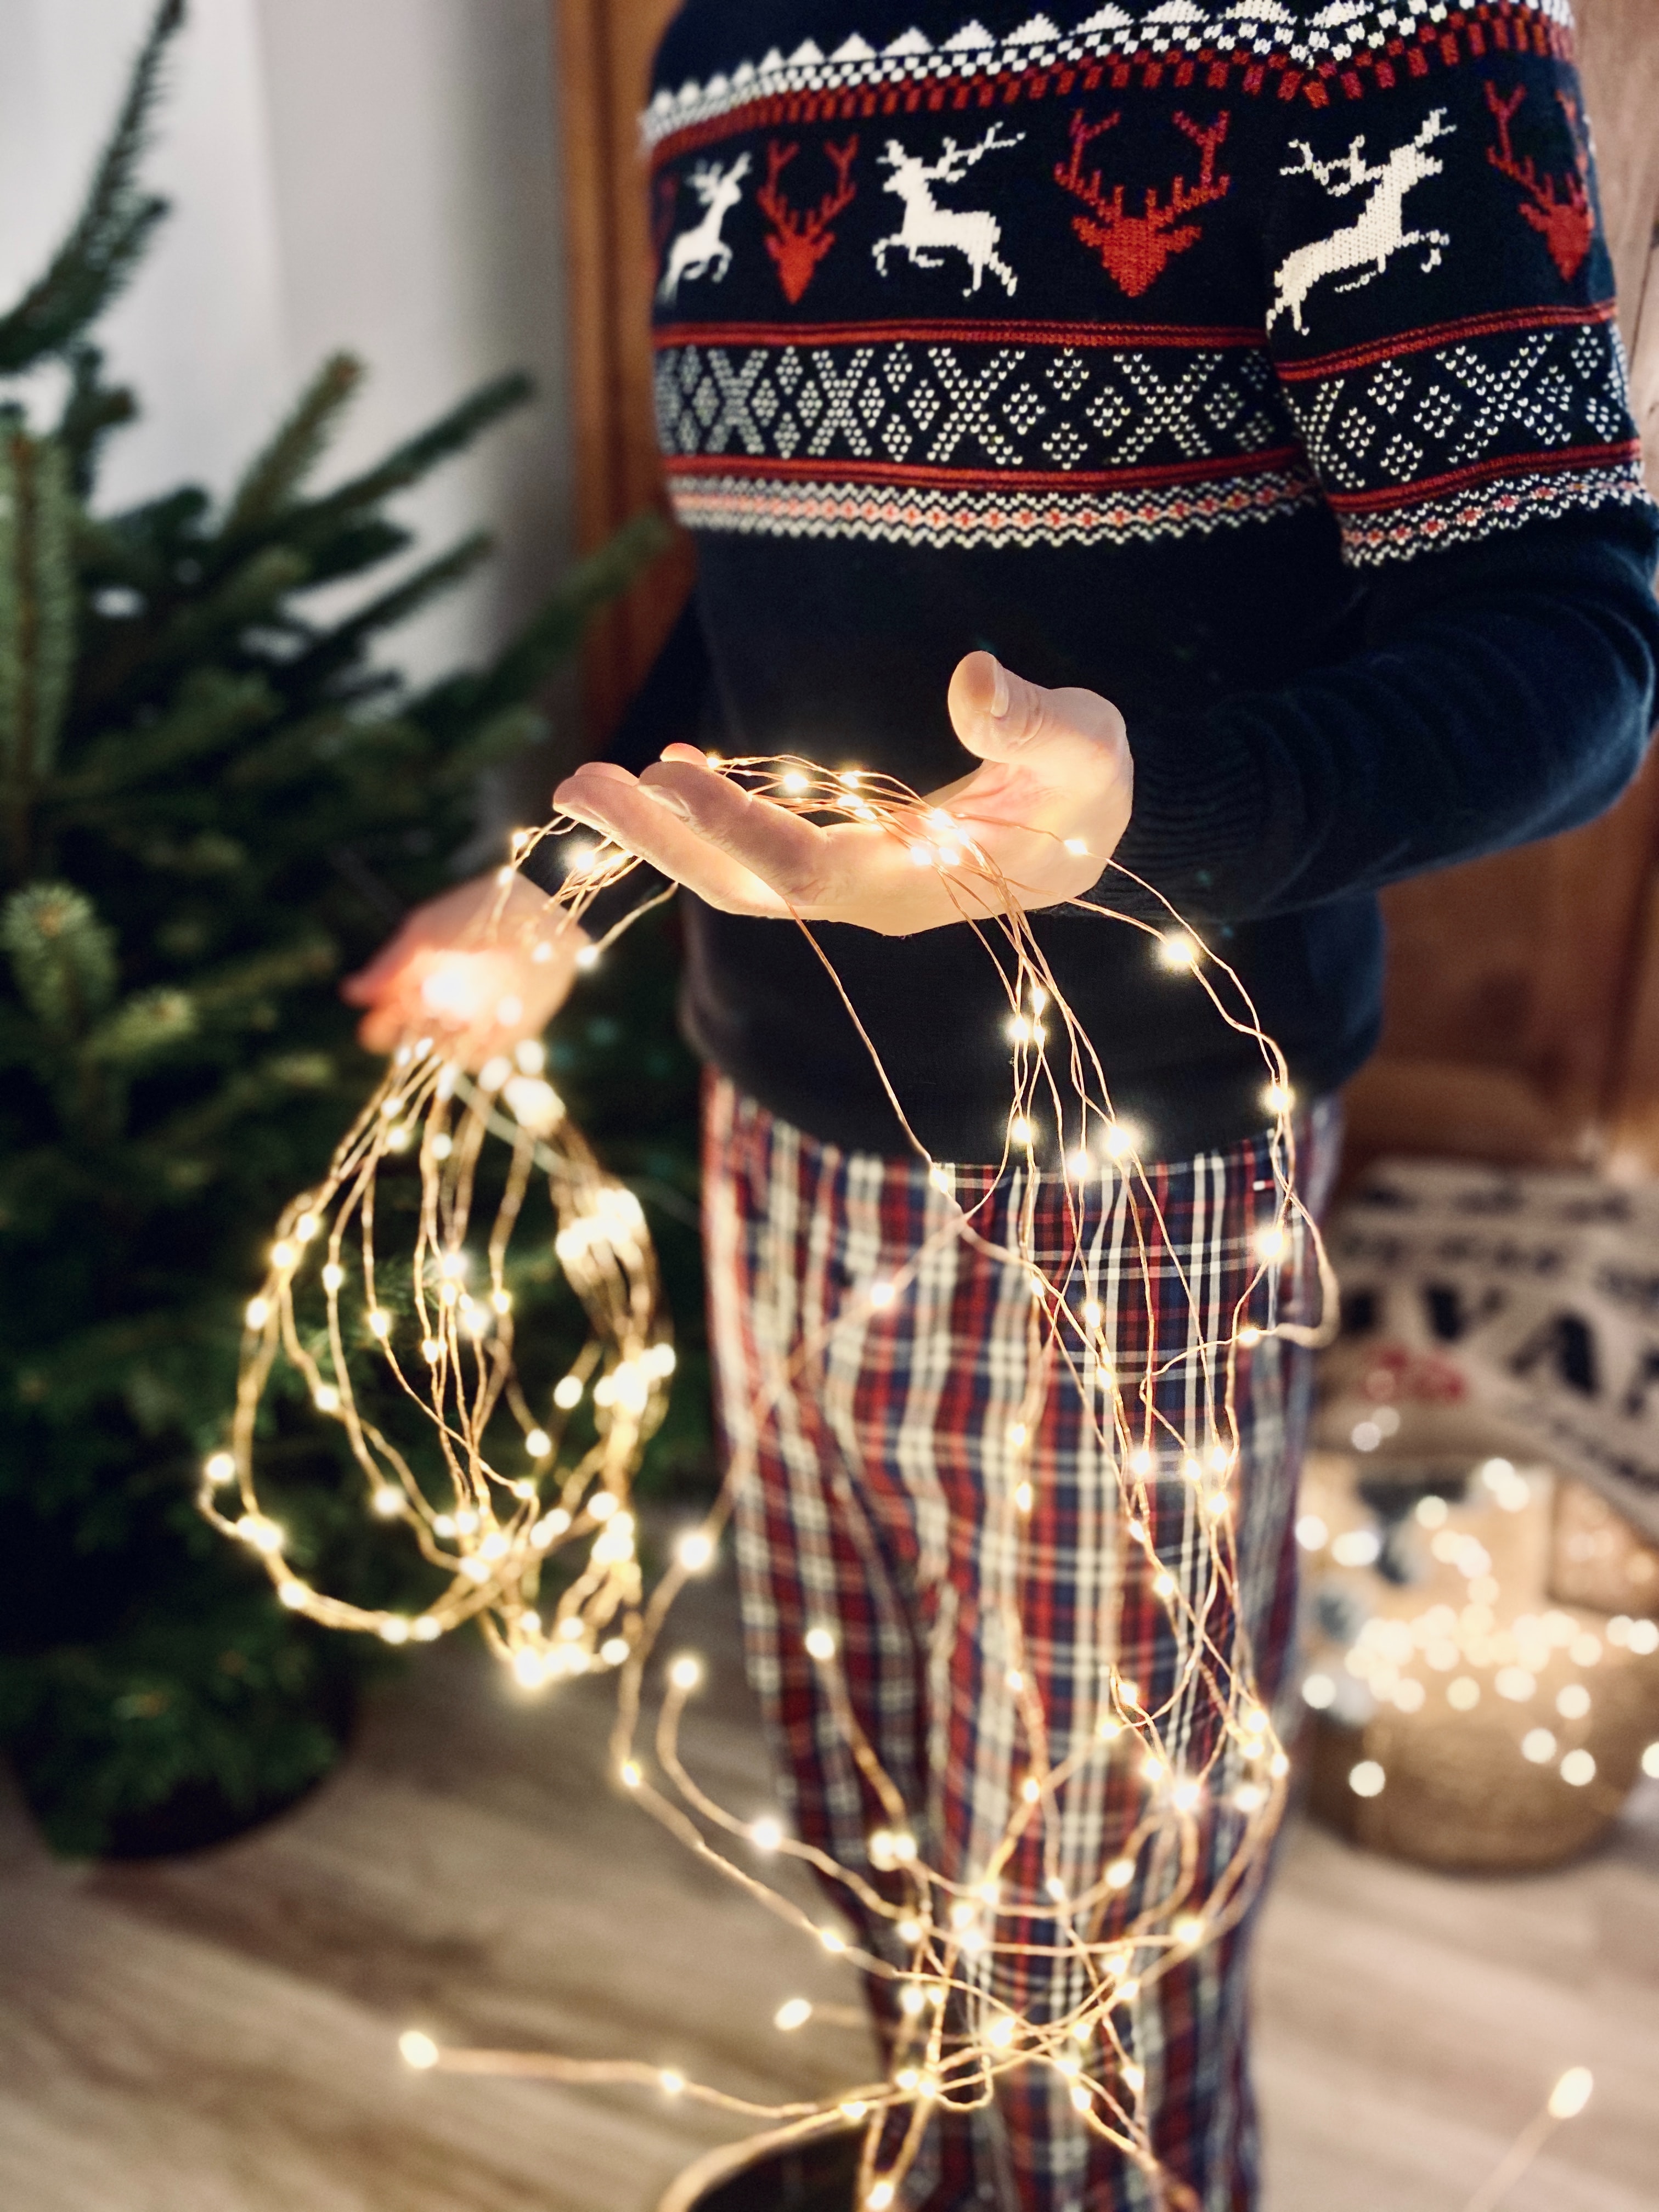 Autre décoration pour Noël,Guirlande lumineuse de Noël en forme de